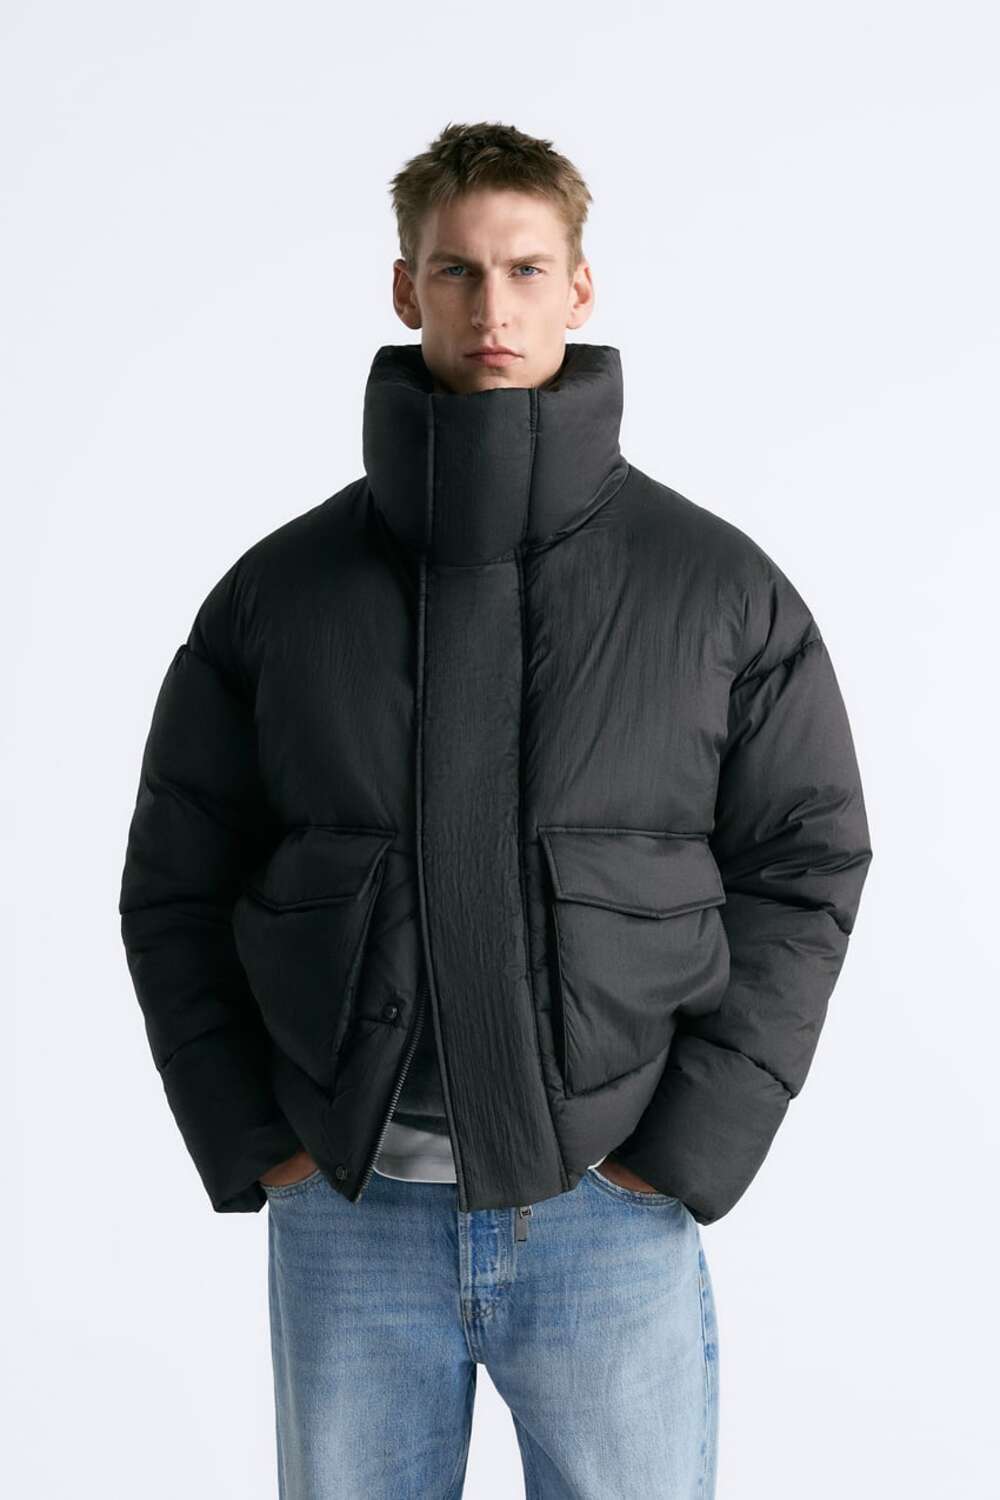 muske jakne za zimu 2023 02 Muške jakne za zimu: 7 najmodernijih modela, prema izboru naših stilista